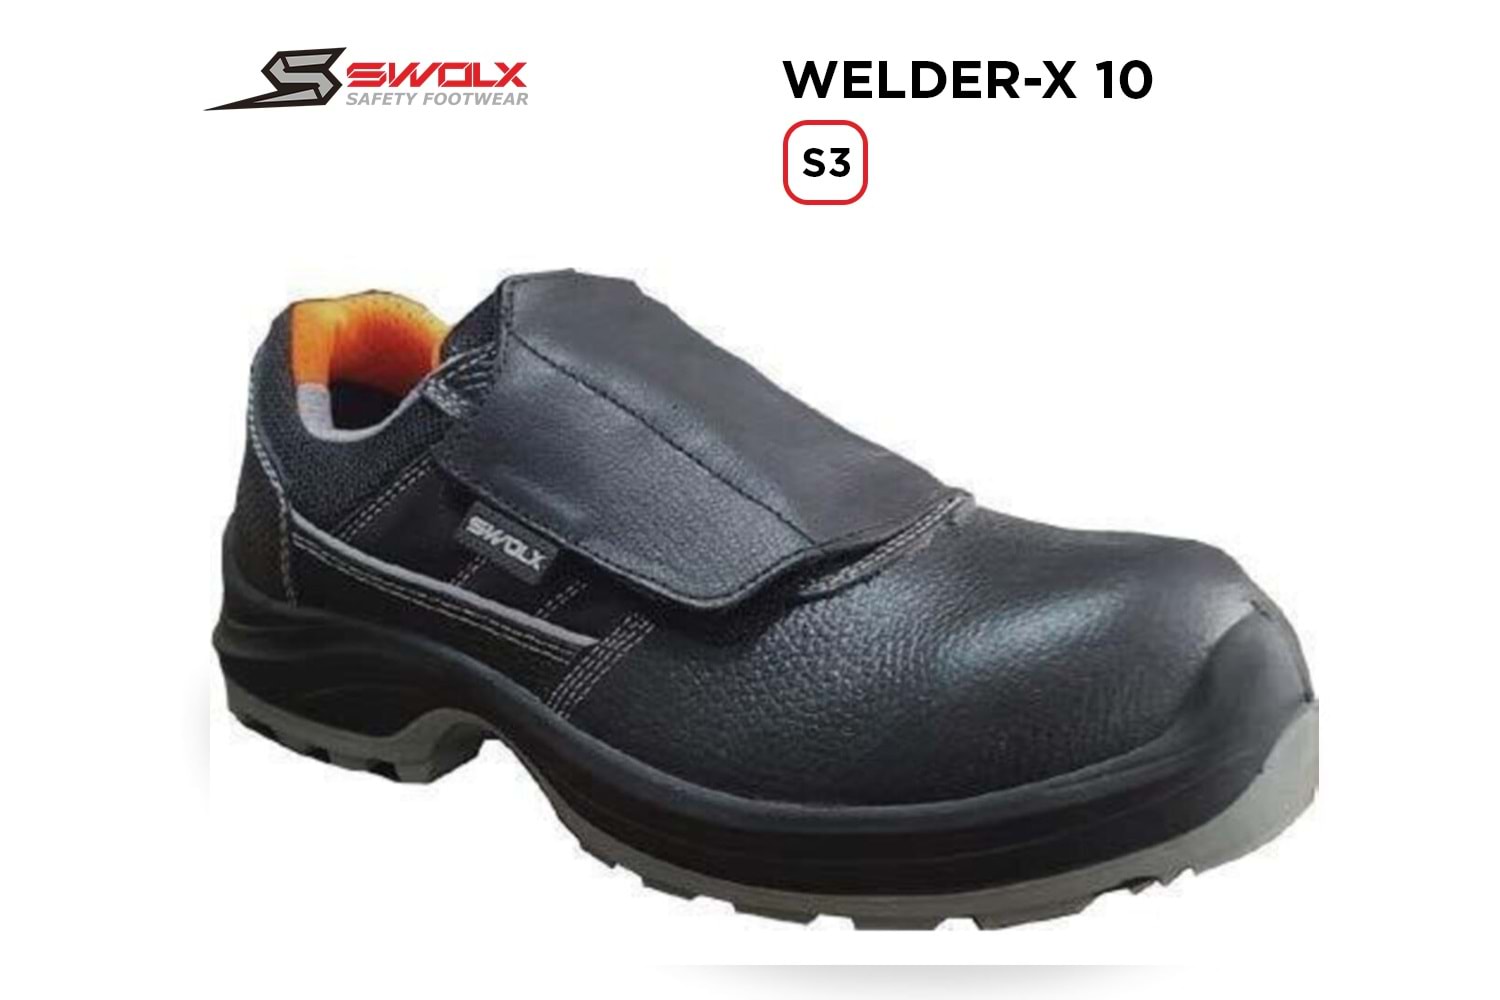 Swolx İş Ayakkabısı - Welder-X 10 S3 (Clas-x 10 K S3) Kaynakçı - 41